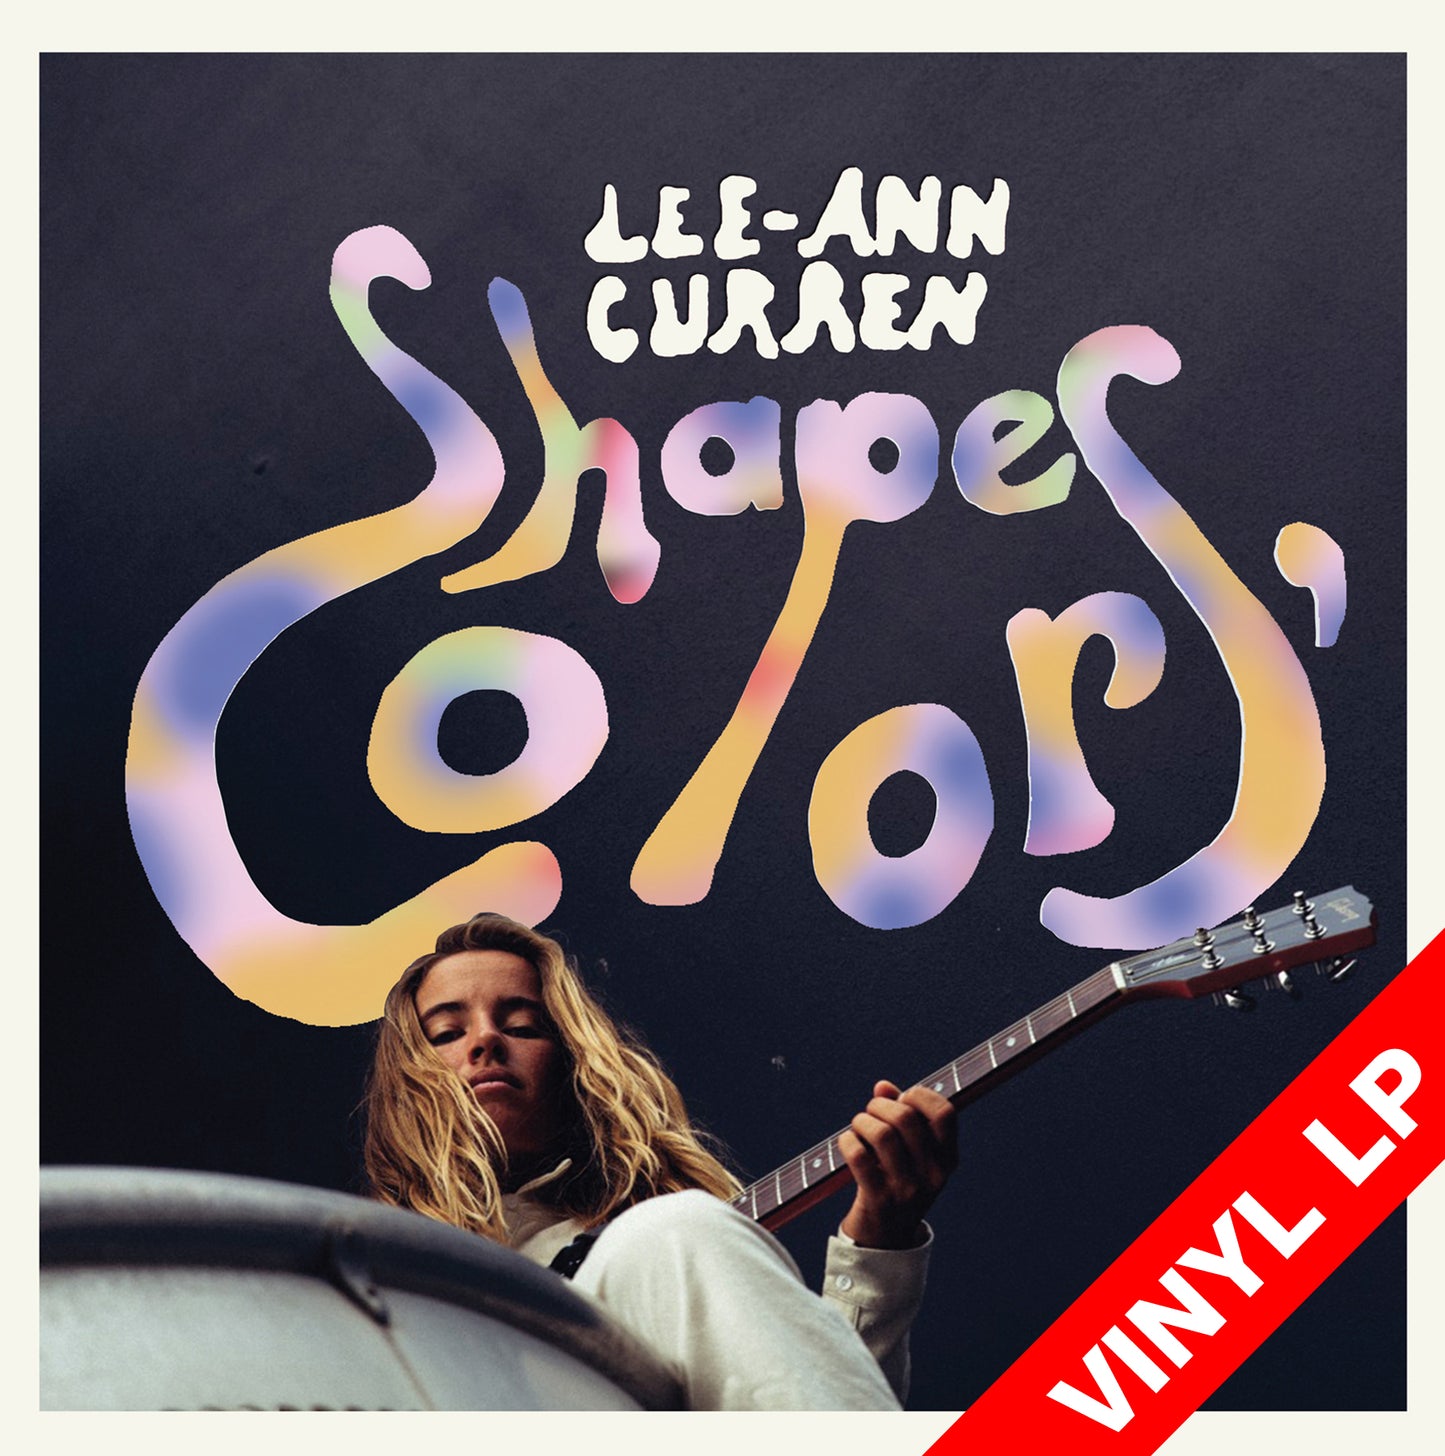 LEE-ANN CURREN  "Shapes, Colors"  / EP 4 titres / vinyle 33T + UNE AQUARELLE INEDITE